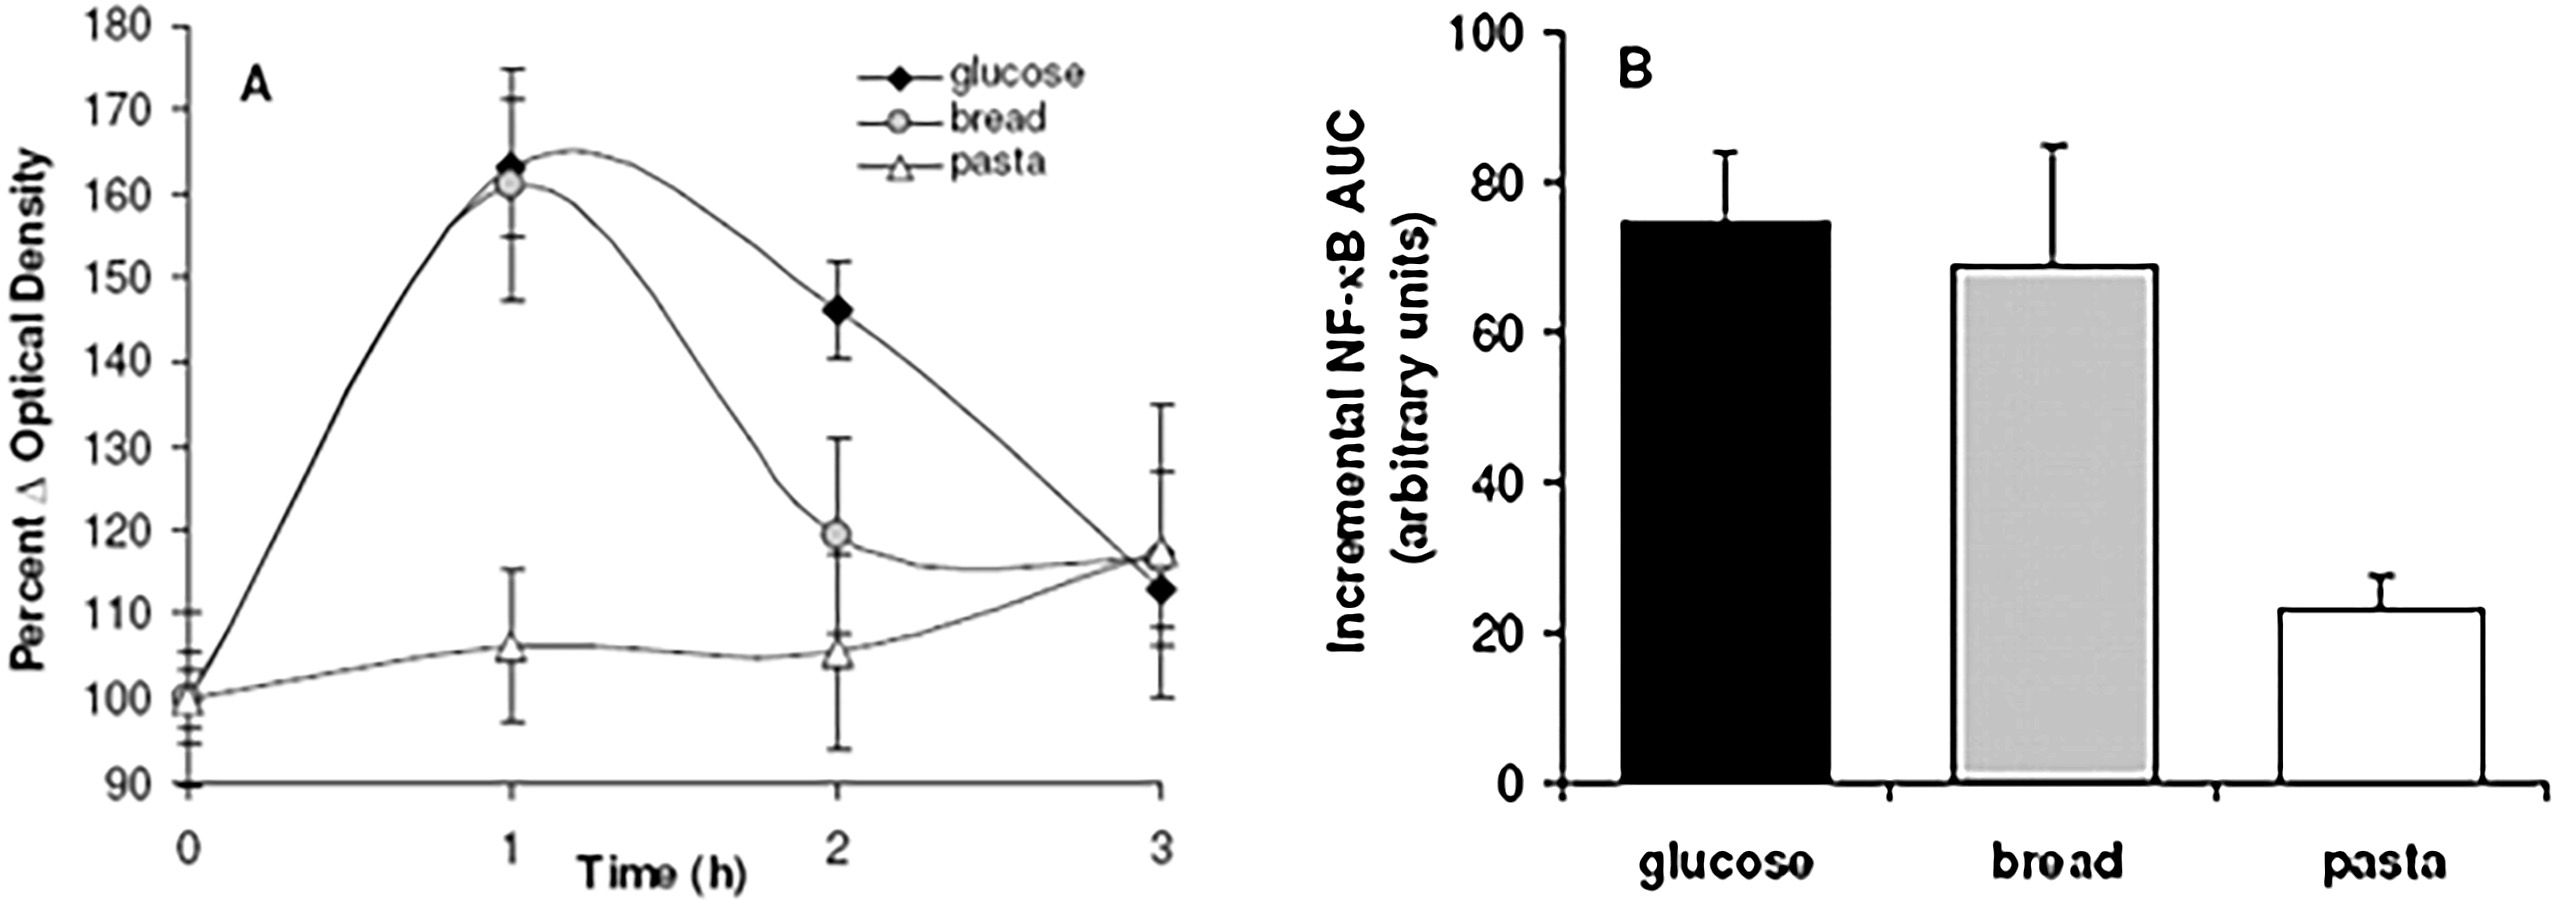 élévation du facteur de transcription NF-κB en fonction des index glycémiques